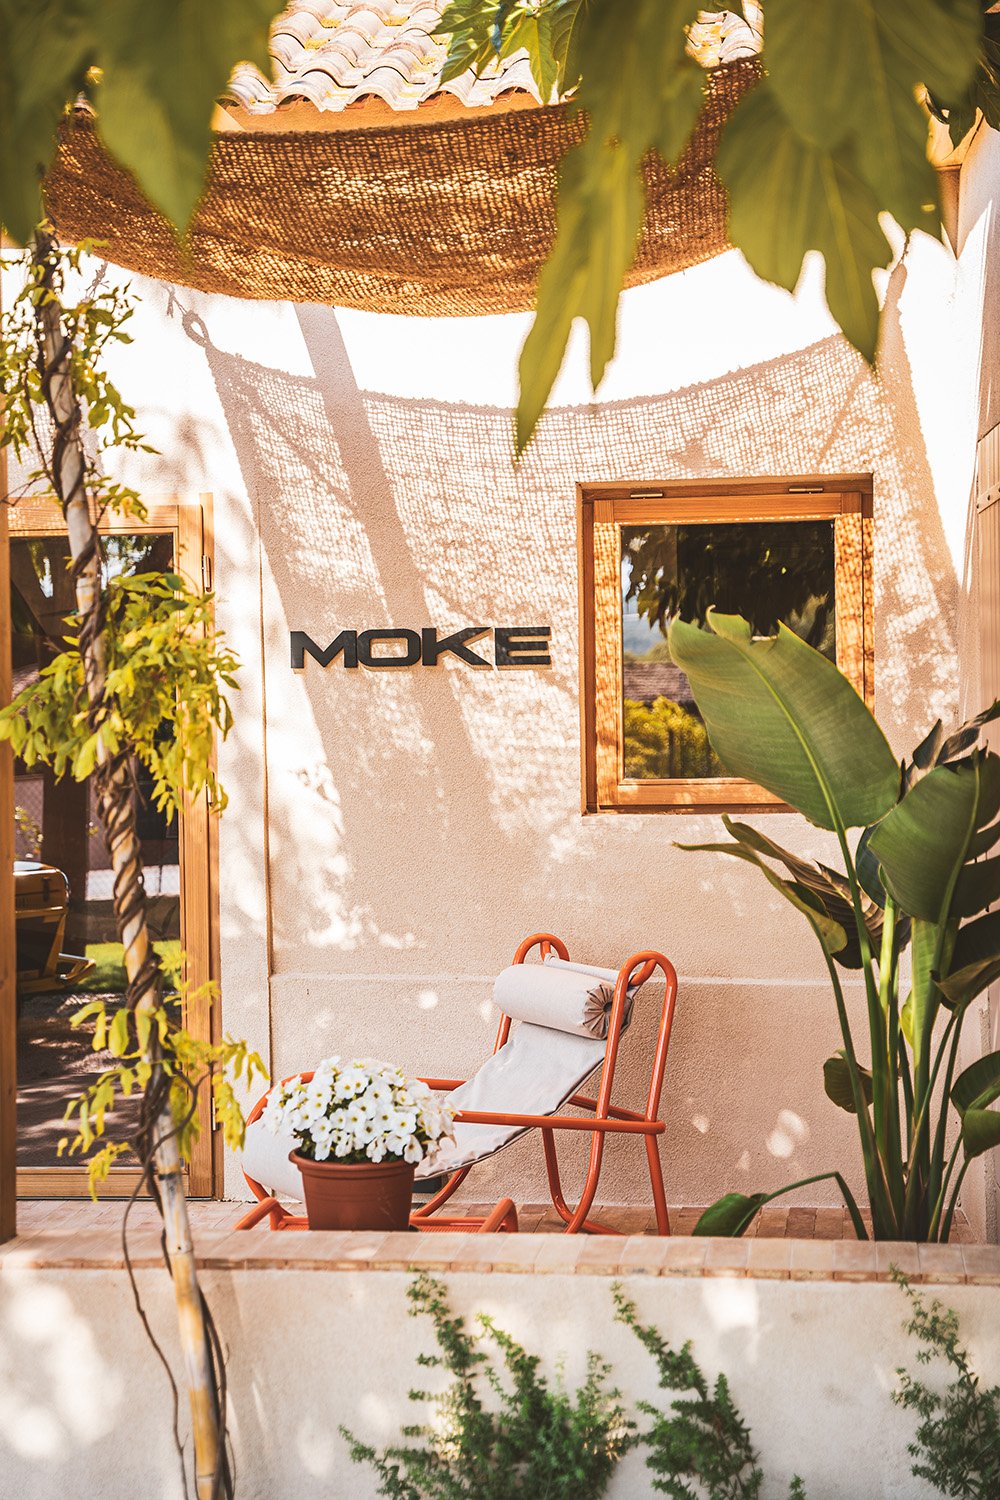 Casa MOKE in Saint-Tropez, France